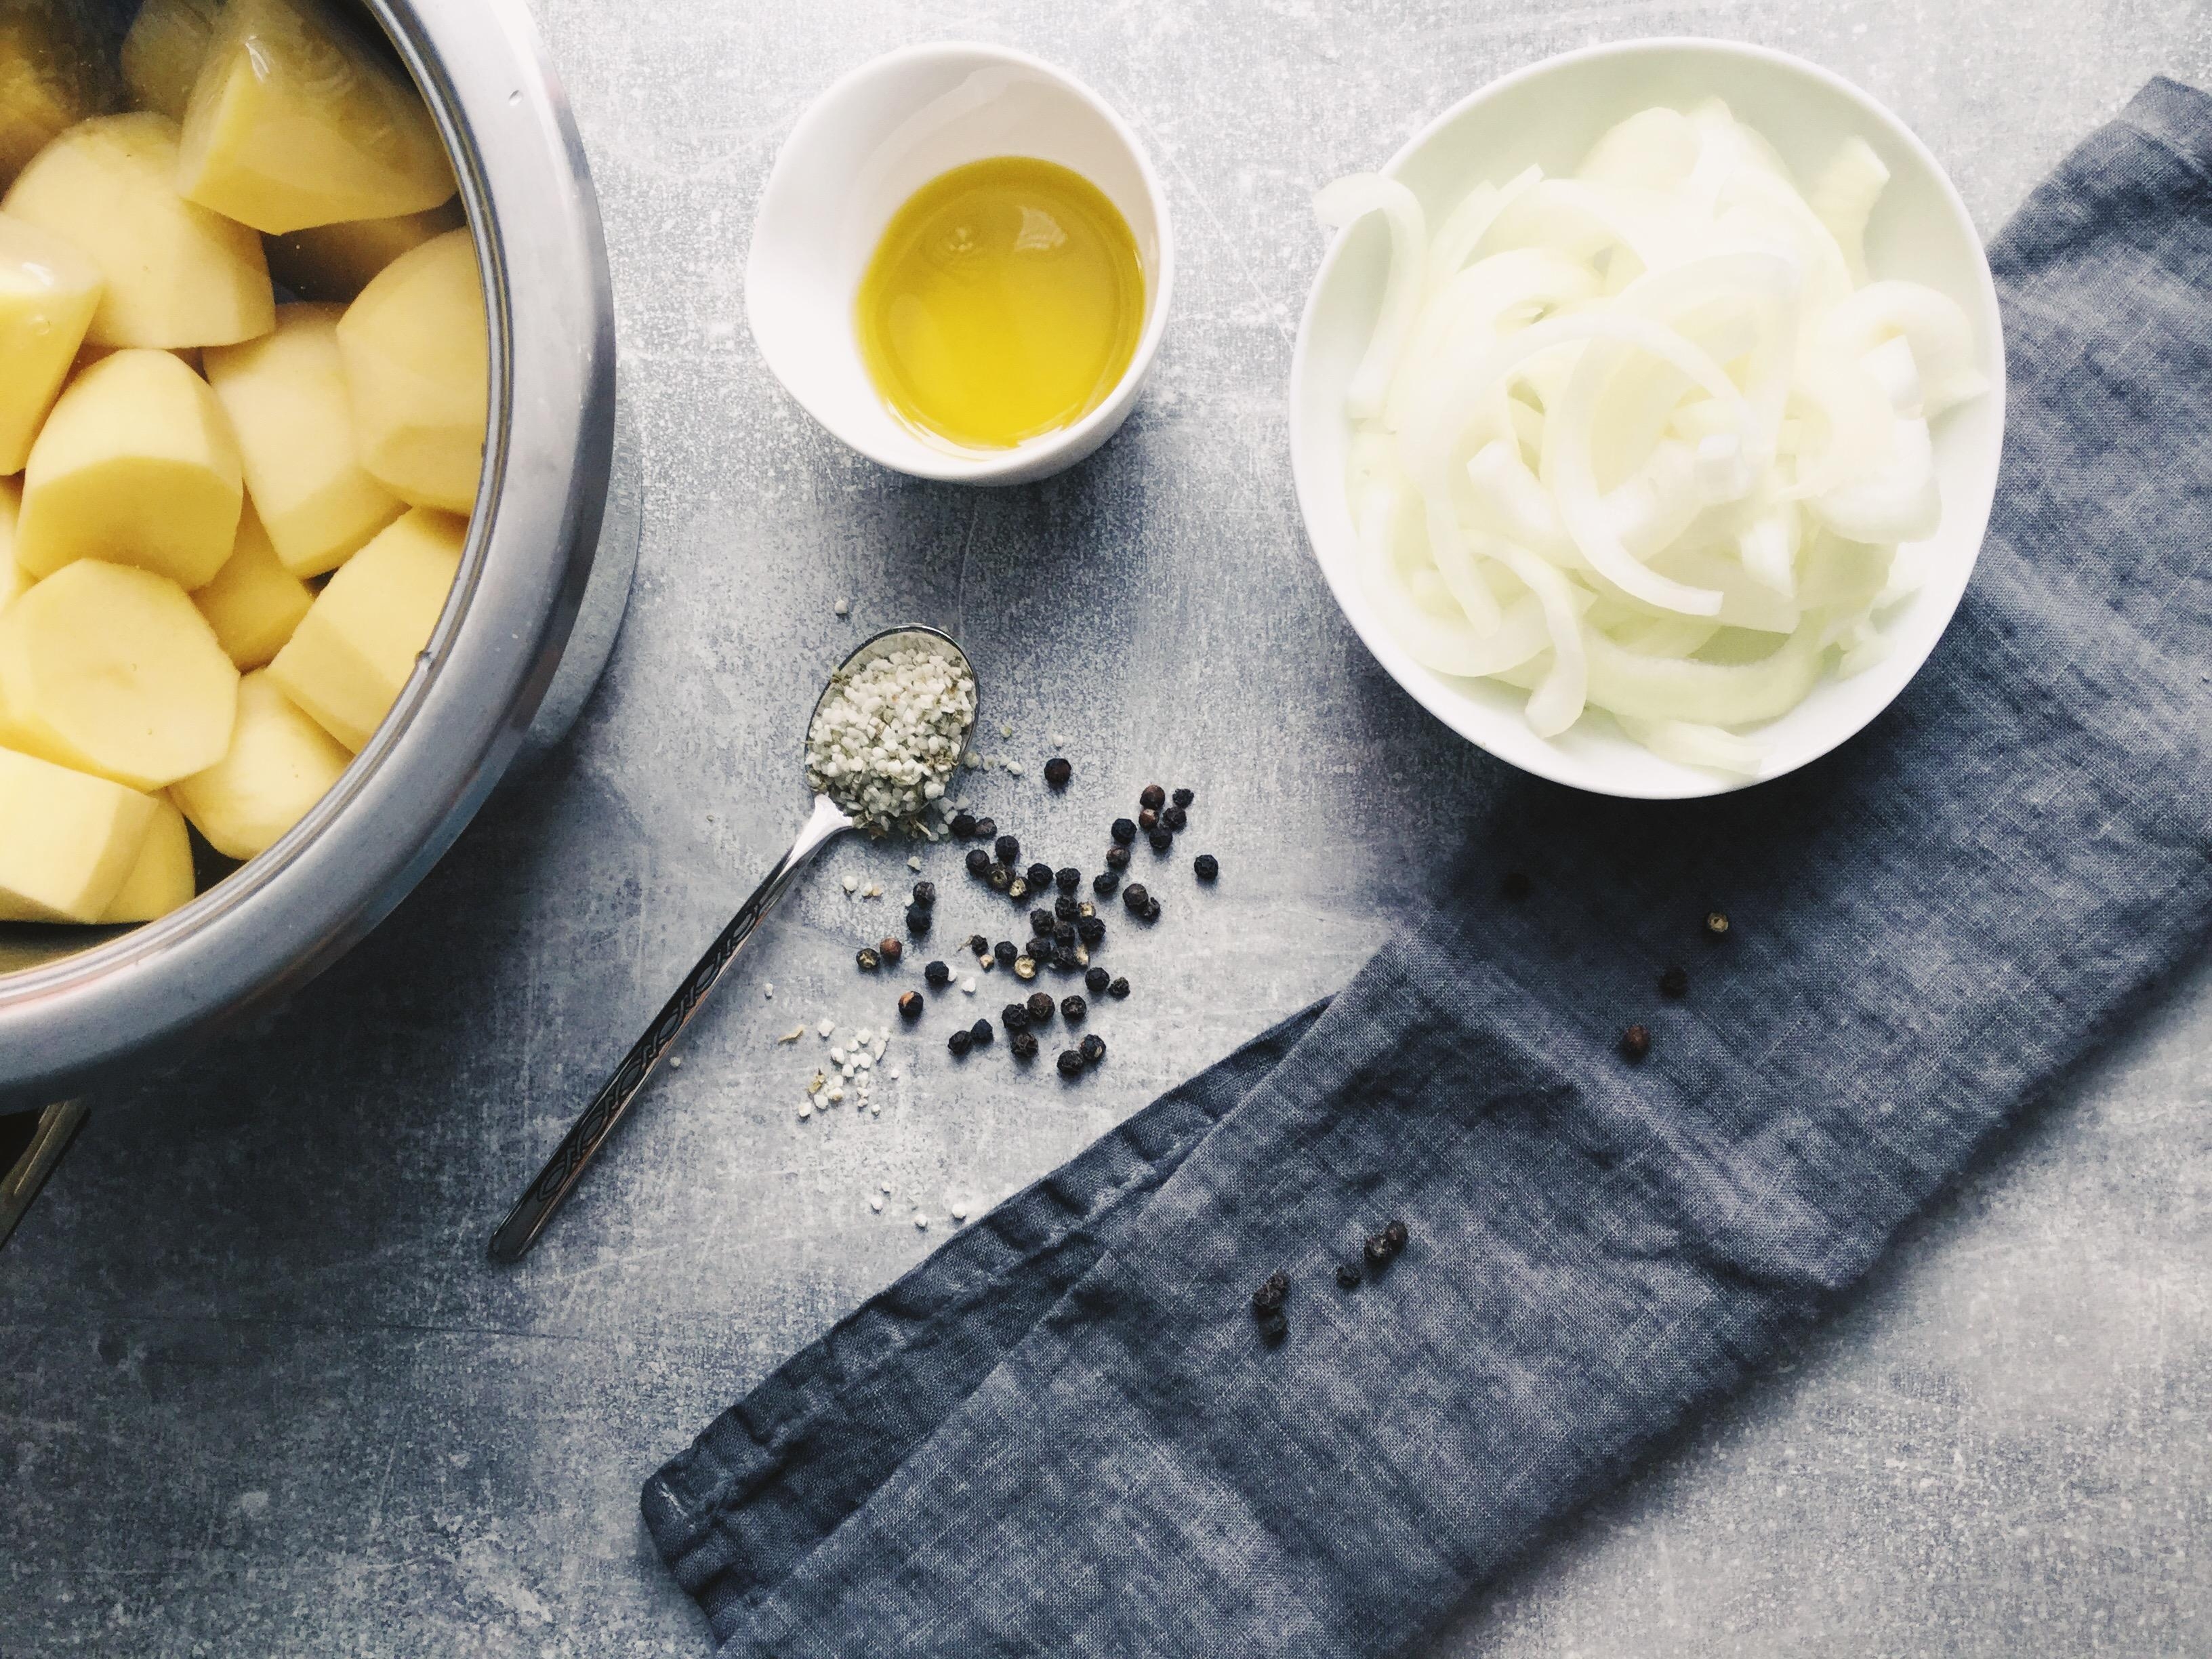 2: Kartoffeln kochen. Brechbohnen bissfest kochen. Zwiebelringe schneiden. #kartoffelgemüsepfanne #couchlieblingsrezept